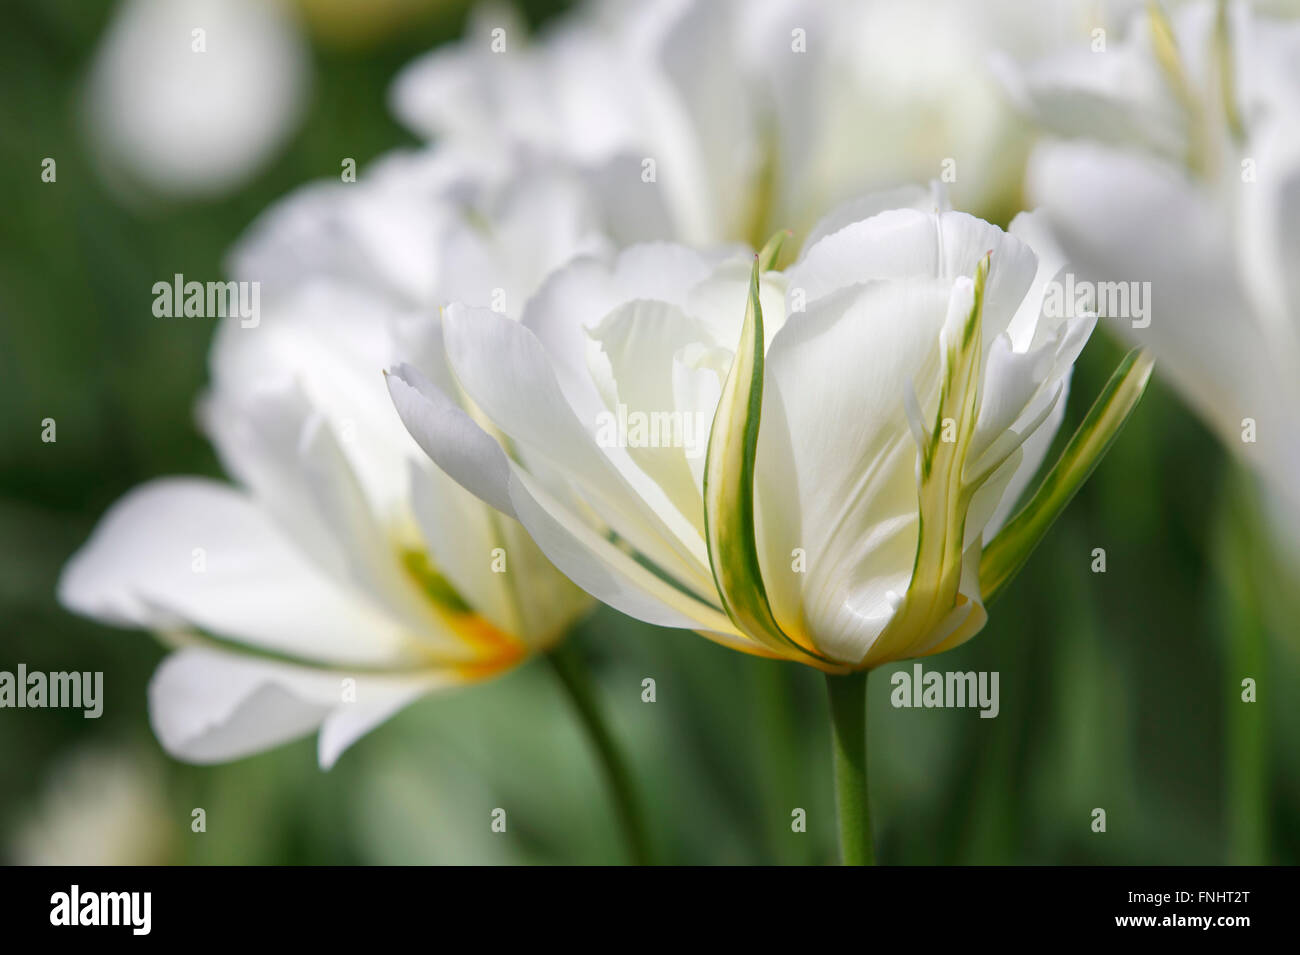 Fosteriana Tulip, variety Exotic Emperor / (Tulipa fosteriana) Stock Photo